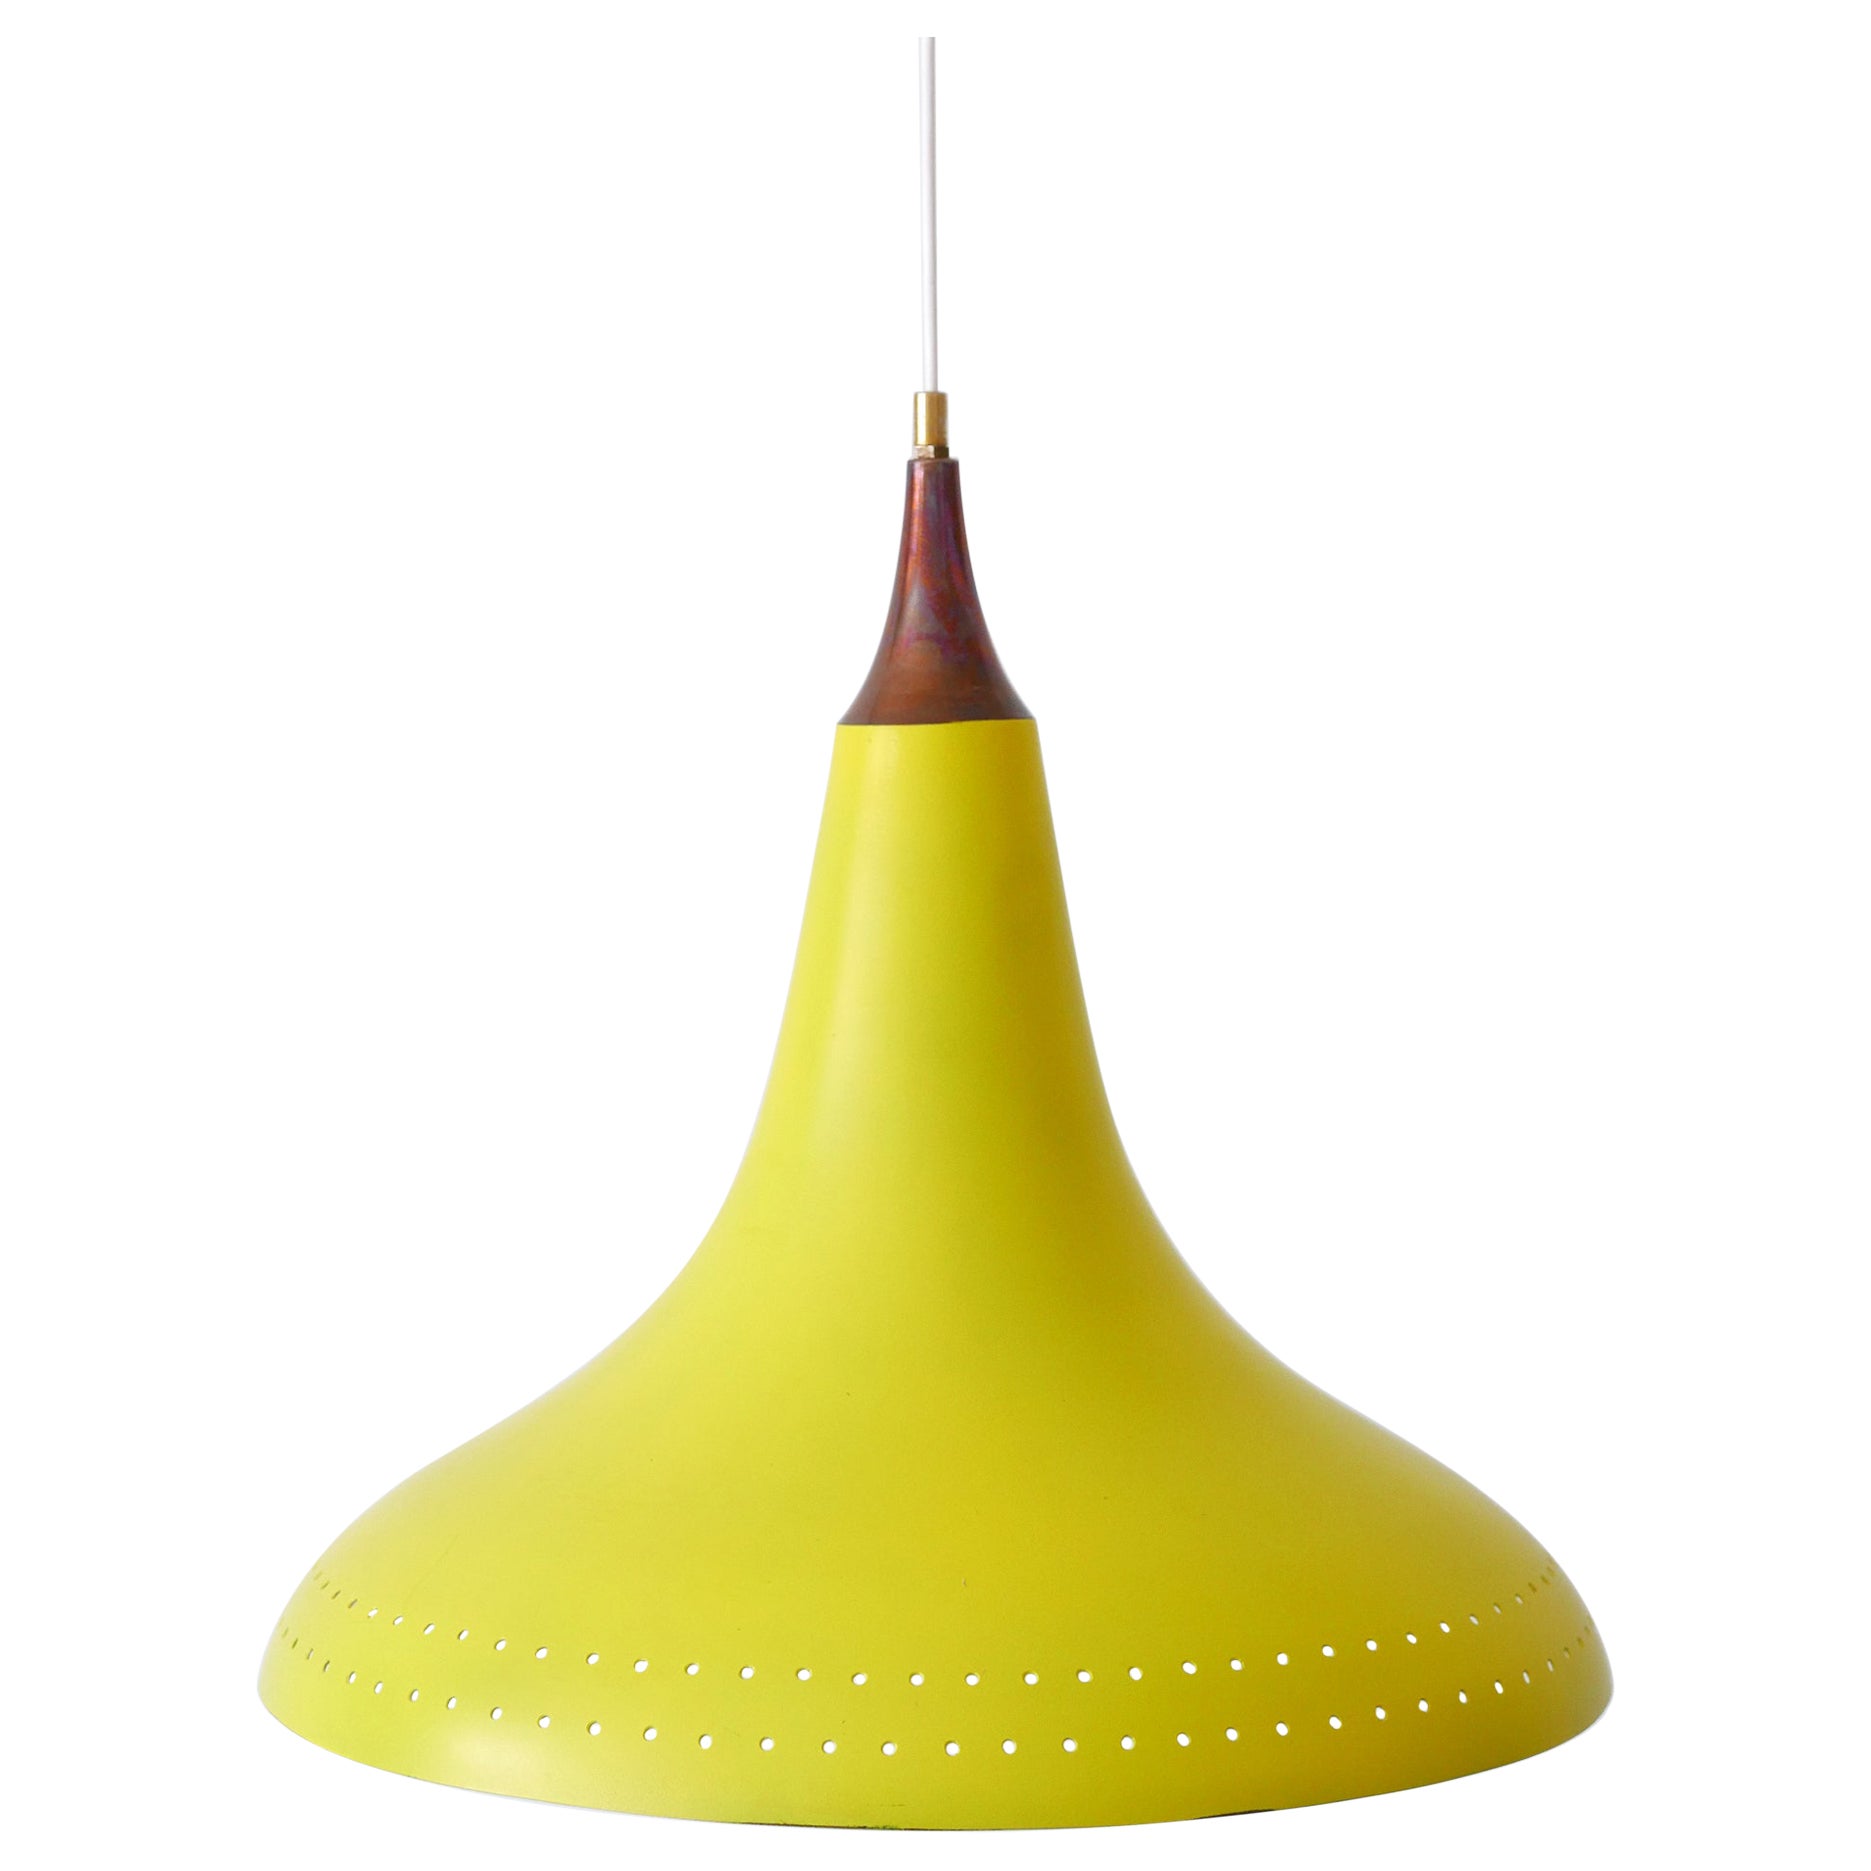 Exceptional Mid-Century Modern Perforated Aluminium Pendant Lamp Austria 1960s For Sale